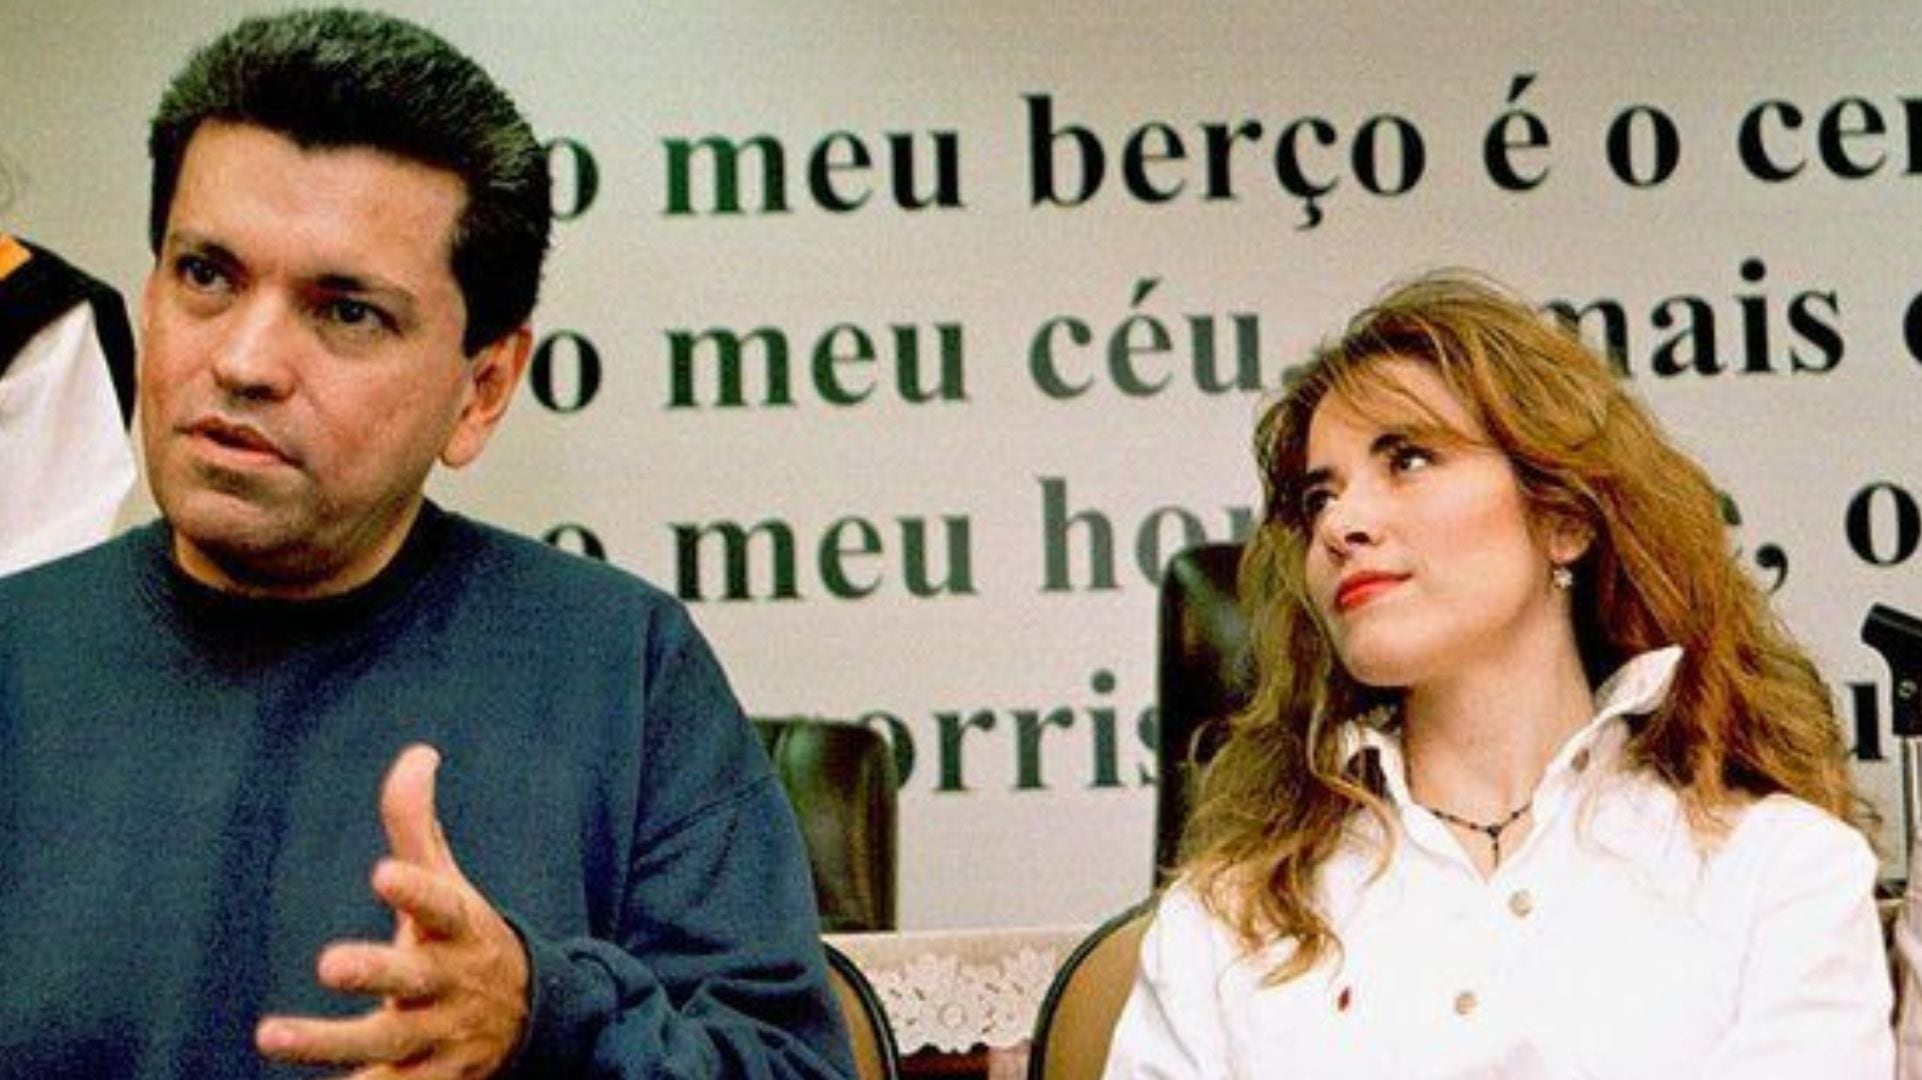 SErgio Andrade y Gloria trevi (Archivo)